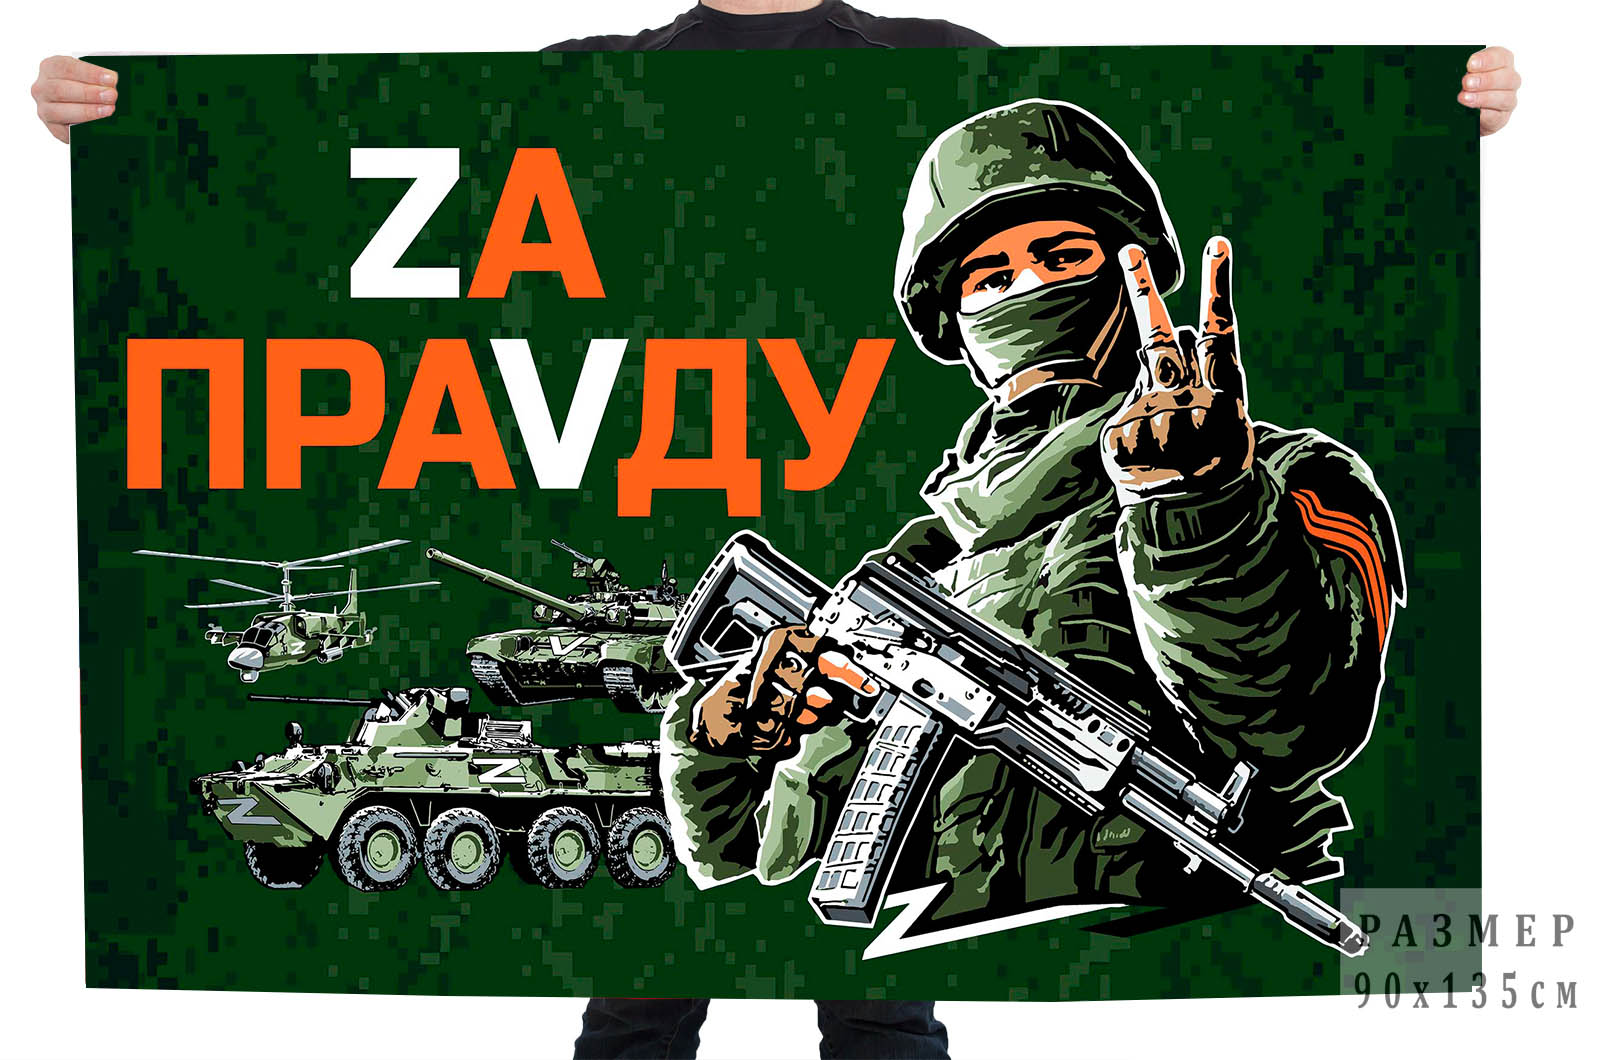 Флаг с девизом "Zа праVду"